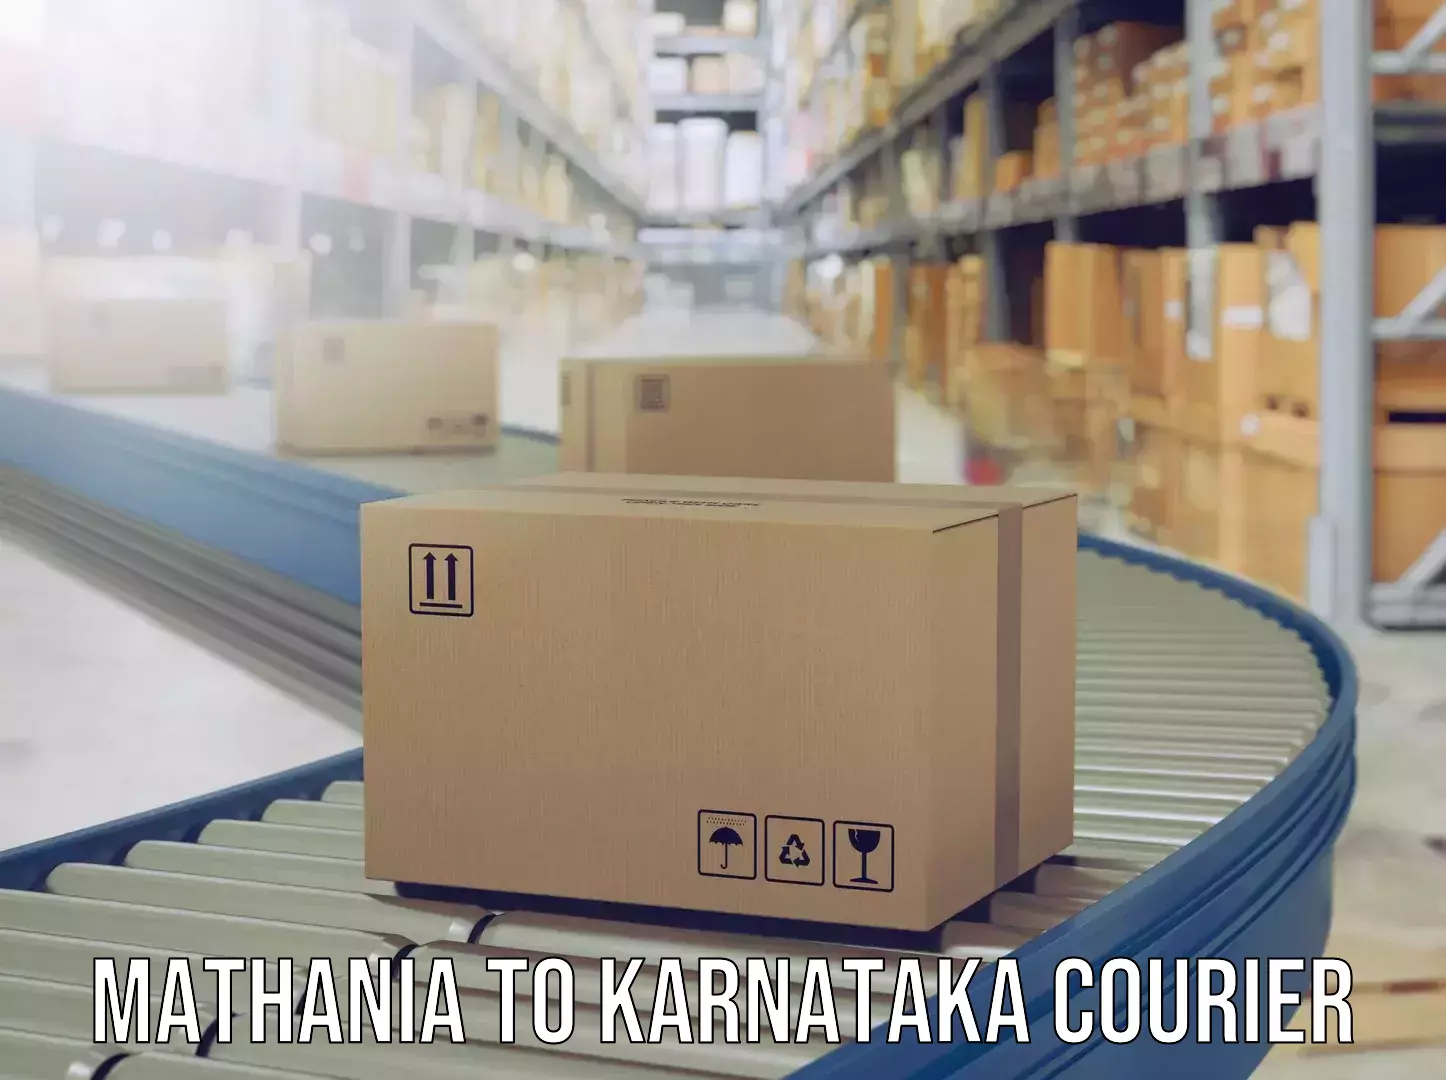 Express baggage shipping Mathania to Karnataka